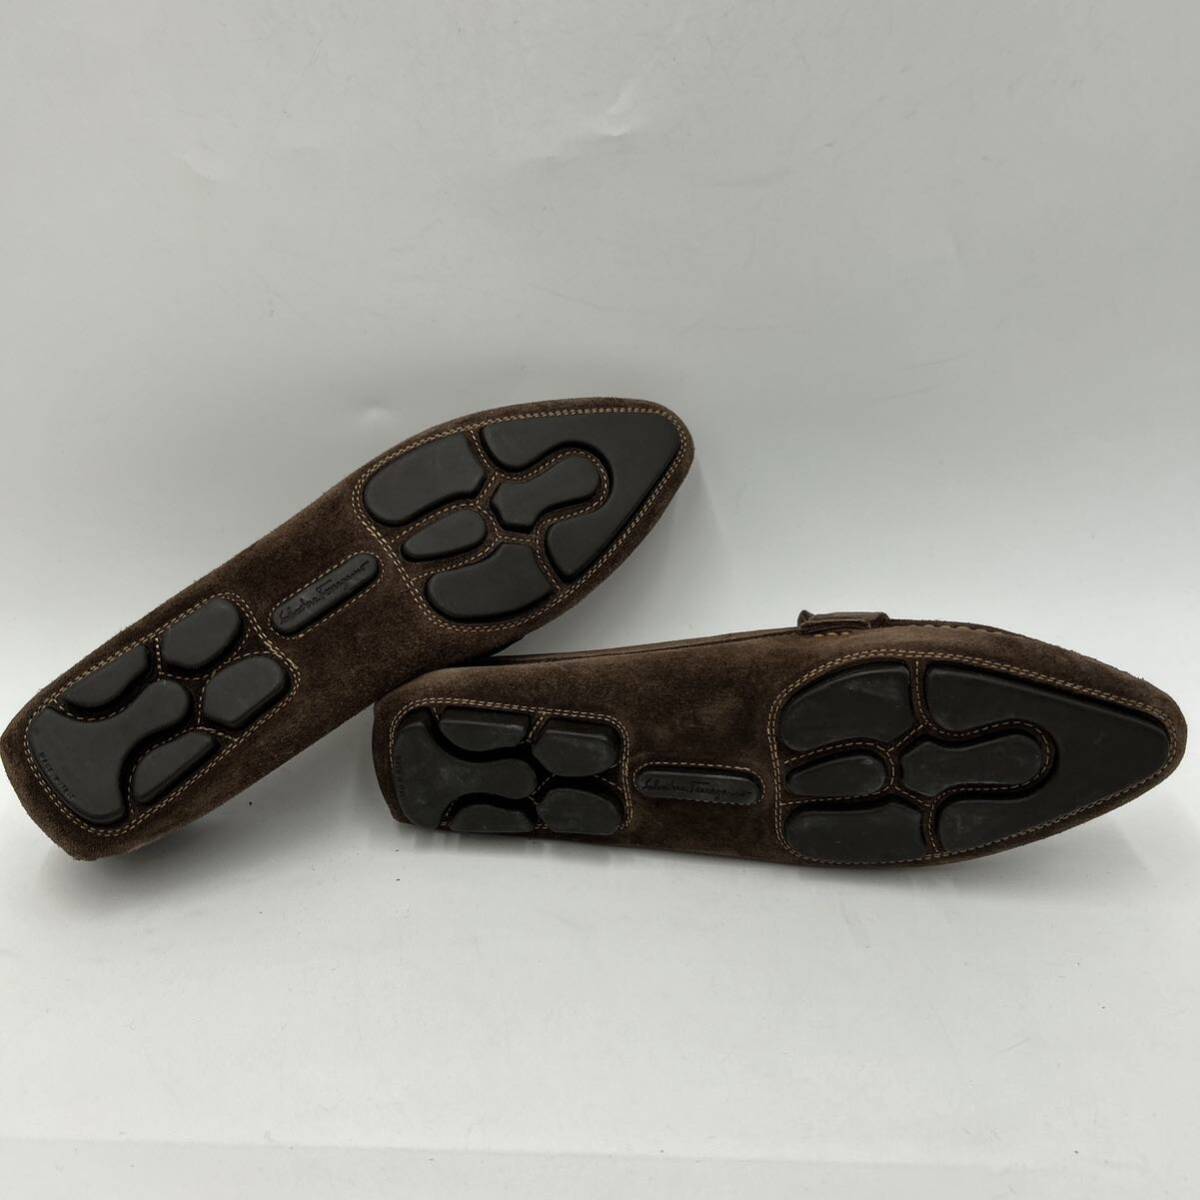 ■ イタリア製 '高級ラグジュアリー靴' Salvatore Ferragamo サルヴァトーレフェラガモ 本革 SUEDE パンプス シューズ US7 24cm 婦人靴 _画像6